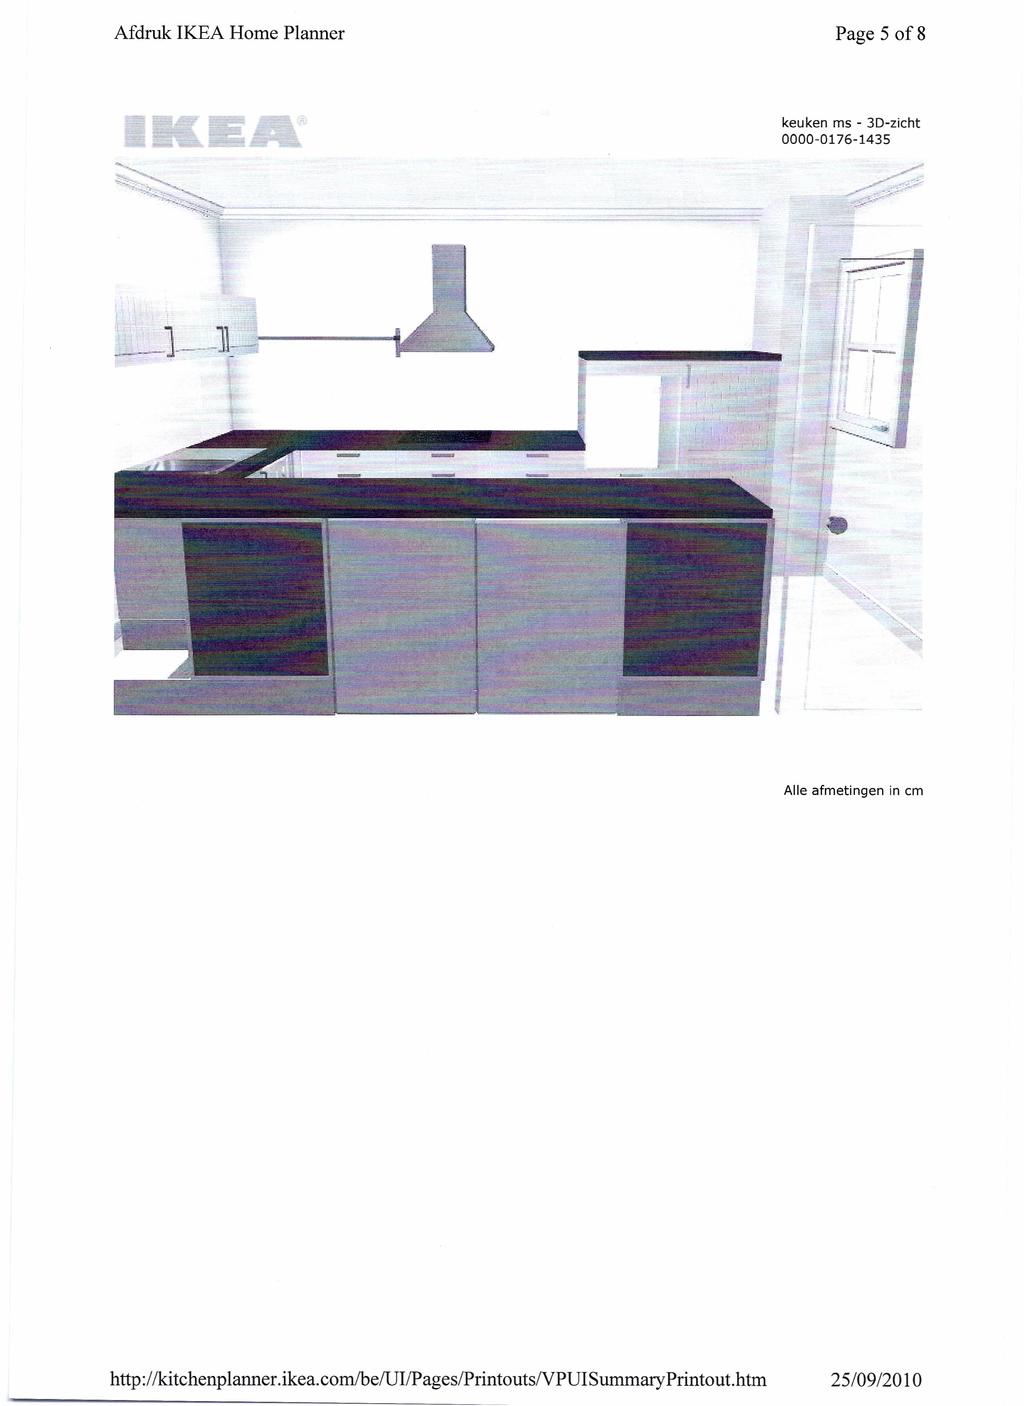 Afdruk lkea Home Planner Page 5 of8 keuken ms - 30-zicht 0000-0176-1435 Alle afmetingen